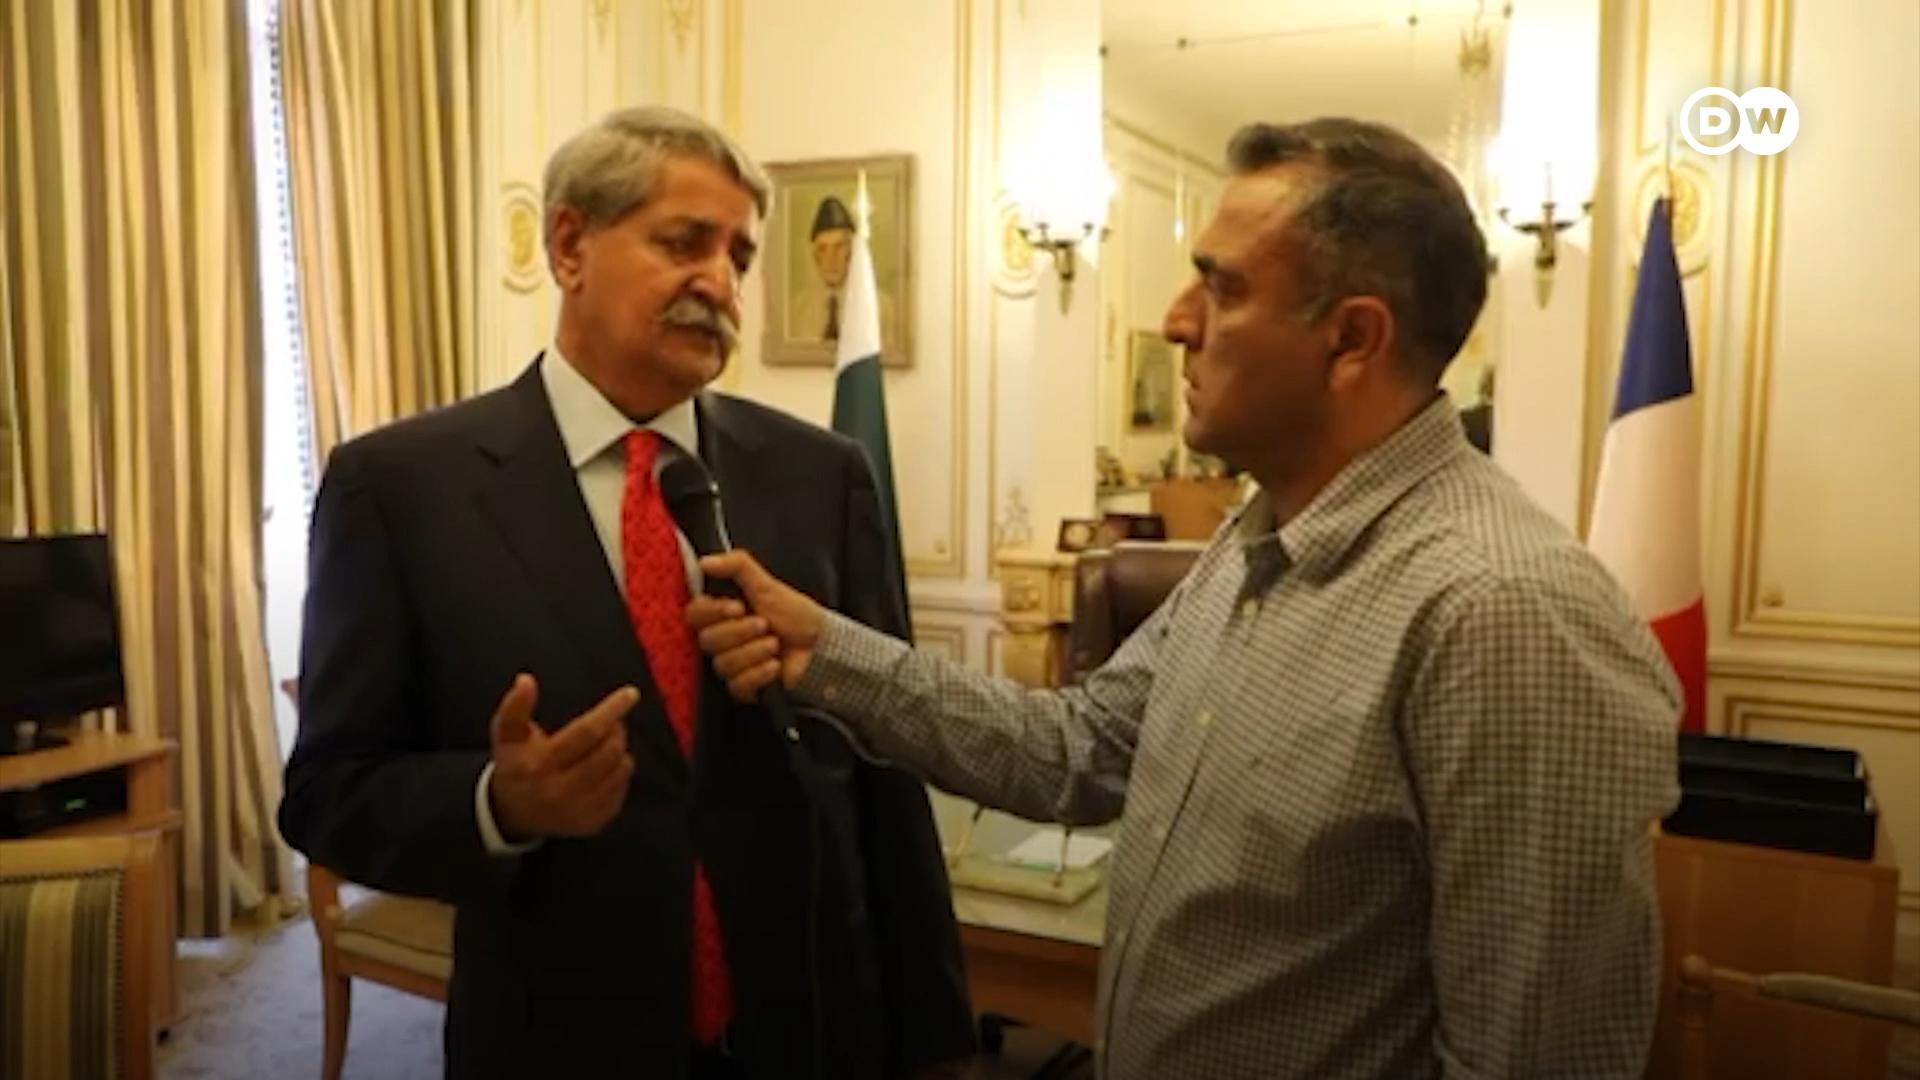 سید نوید قمر نے ڈی ڈبلیو کو انٹرویو دیتے ہوئے کہا کہ پاکستان یورپ کے  ساتھ معاشی تعلقات کو بڑھانا چاہتا ہے۔ 